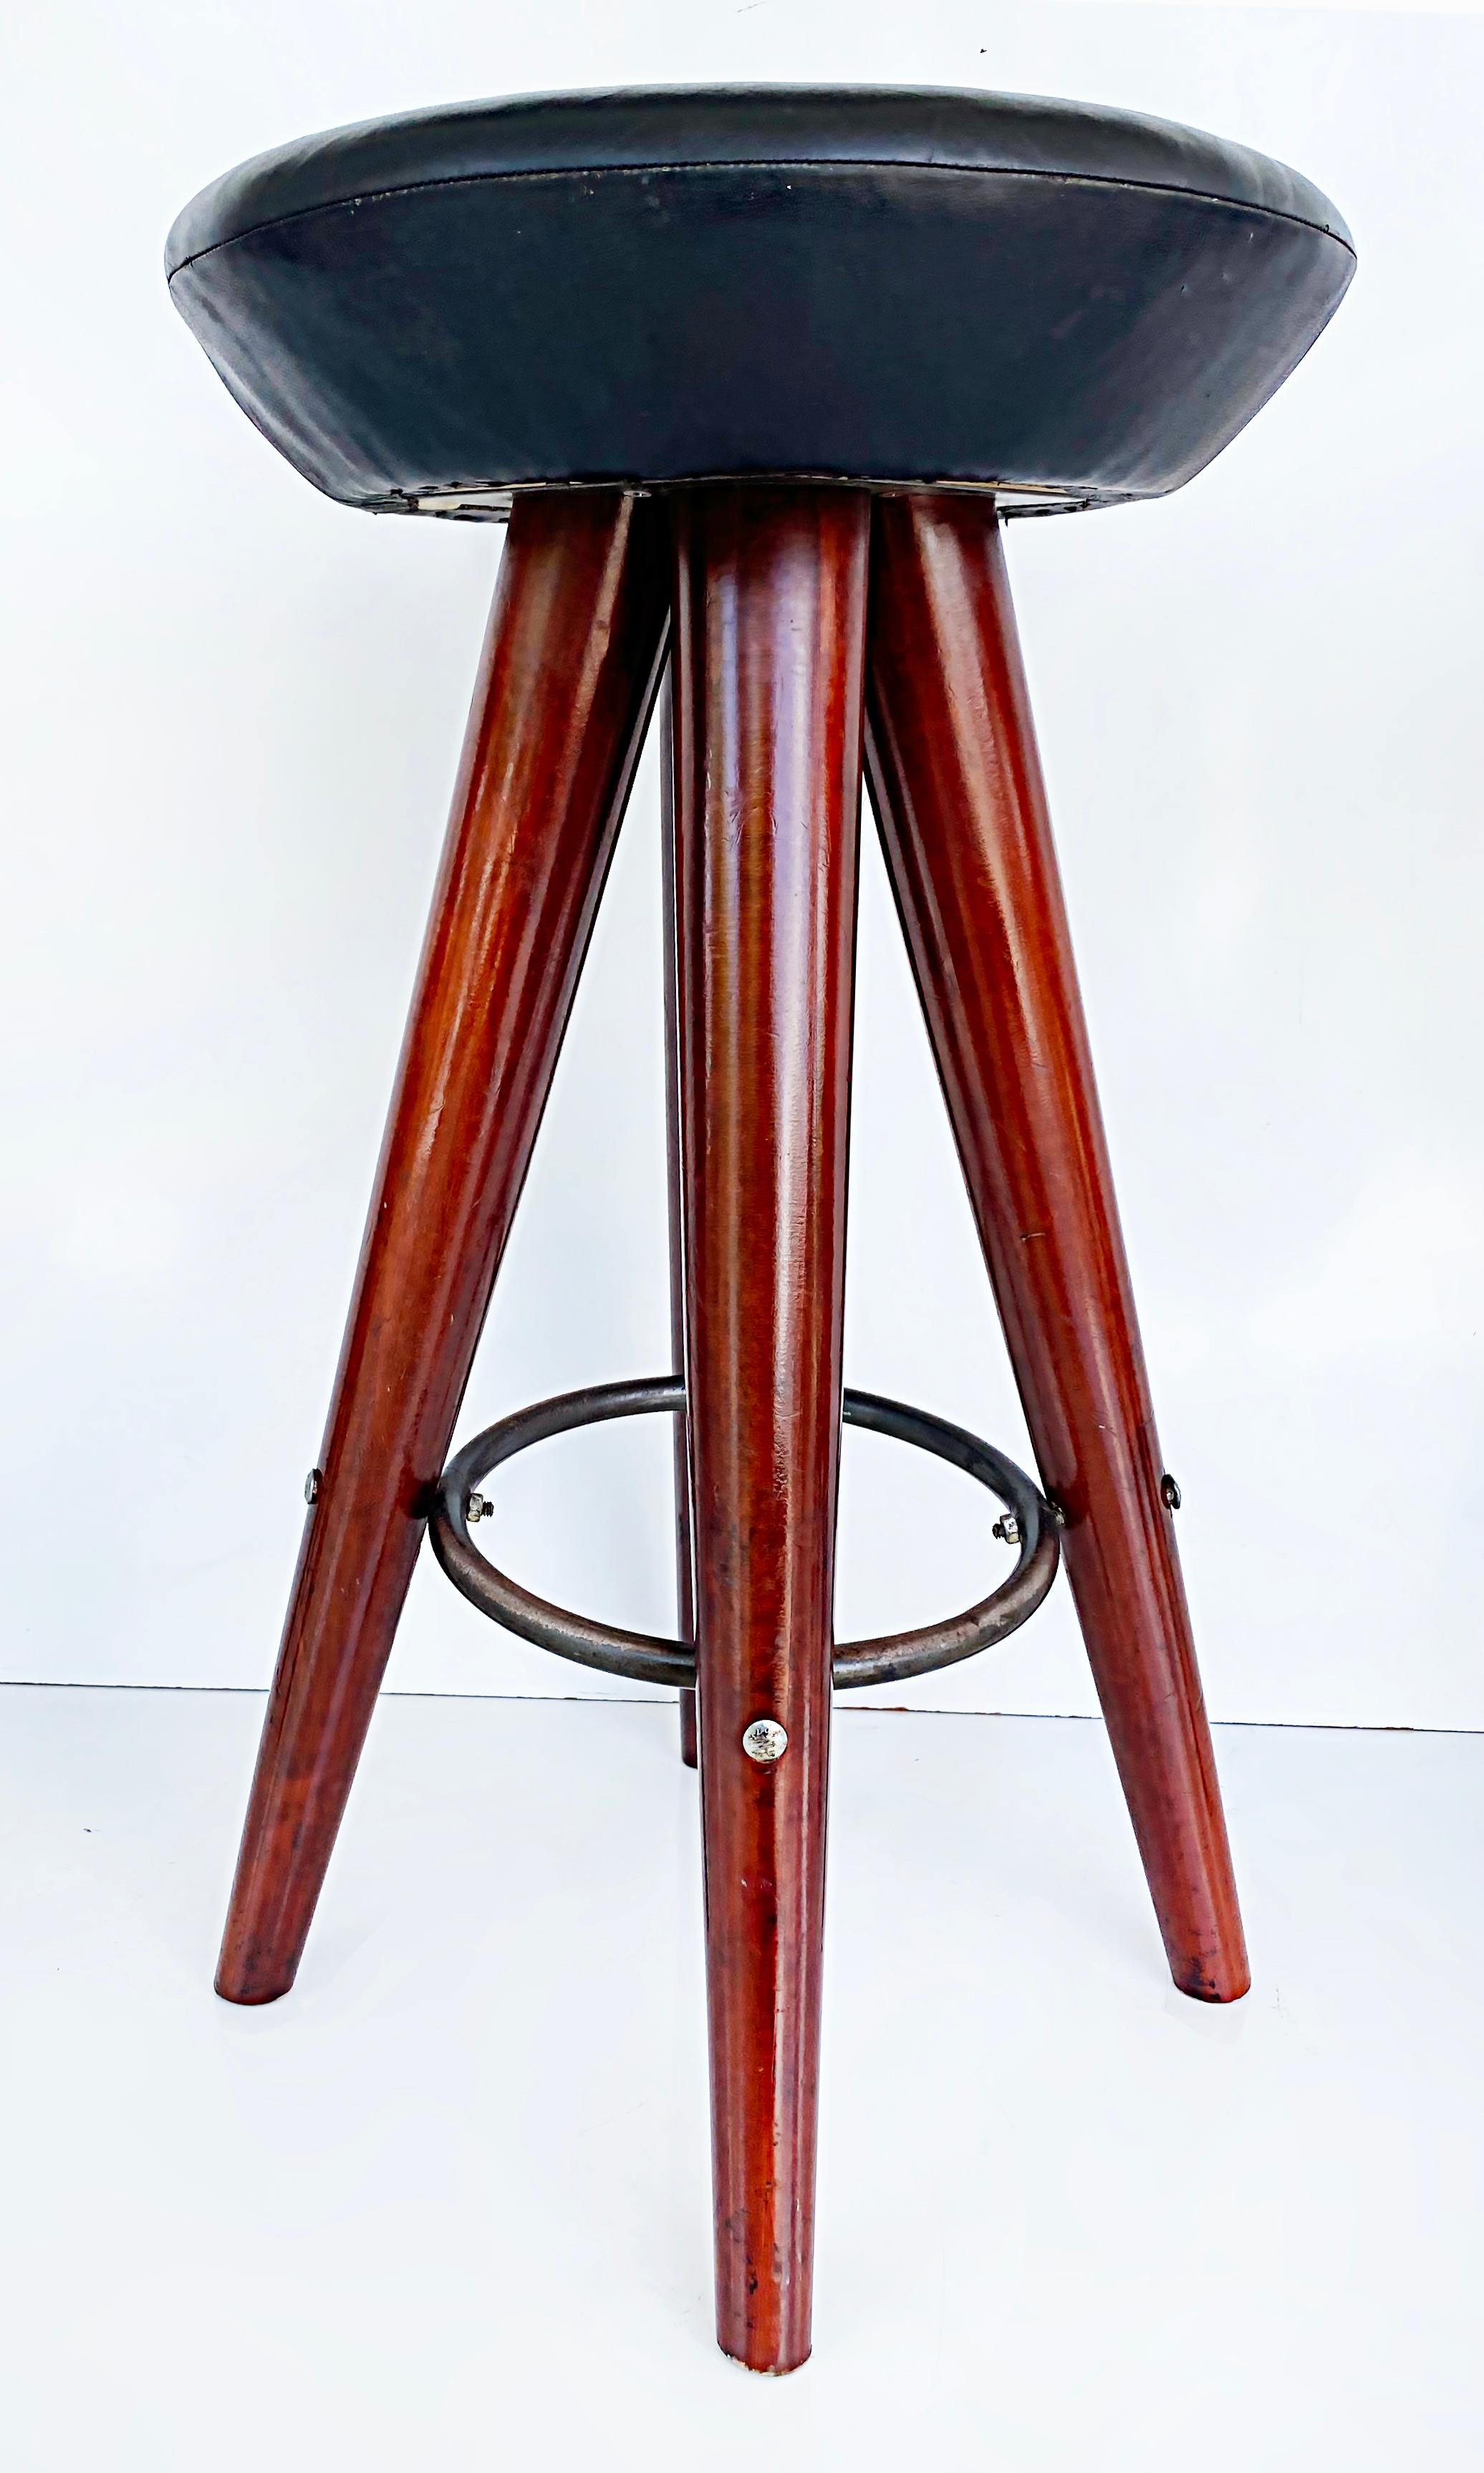 Satz von 3 Vintage Modern Holz Barhocker mit gepolsterten Sitzen

Zum Verkauf angeboten wird ein umfangreiches Set von drei Barhockern aus Holz mit Fußstützen aus Metall und gepolsterten Sitzen aus Vinyl. Diese Hocker sind fest und stabil, weisen